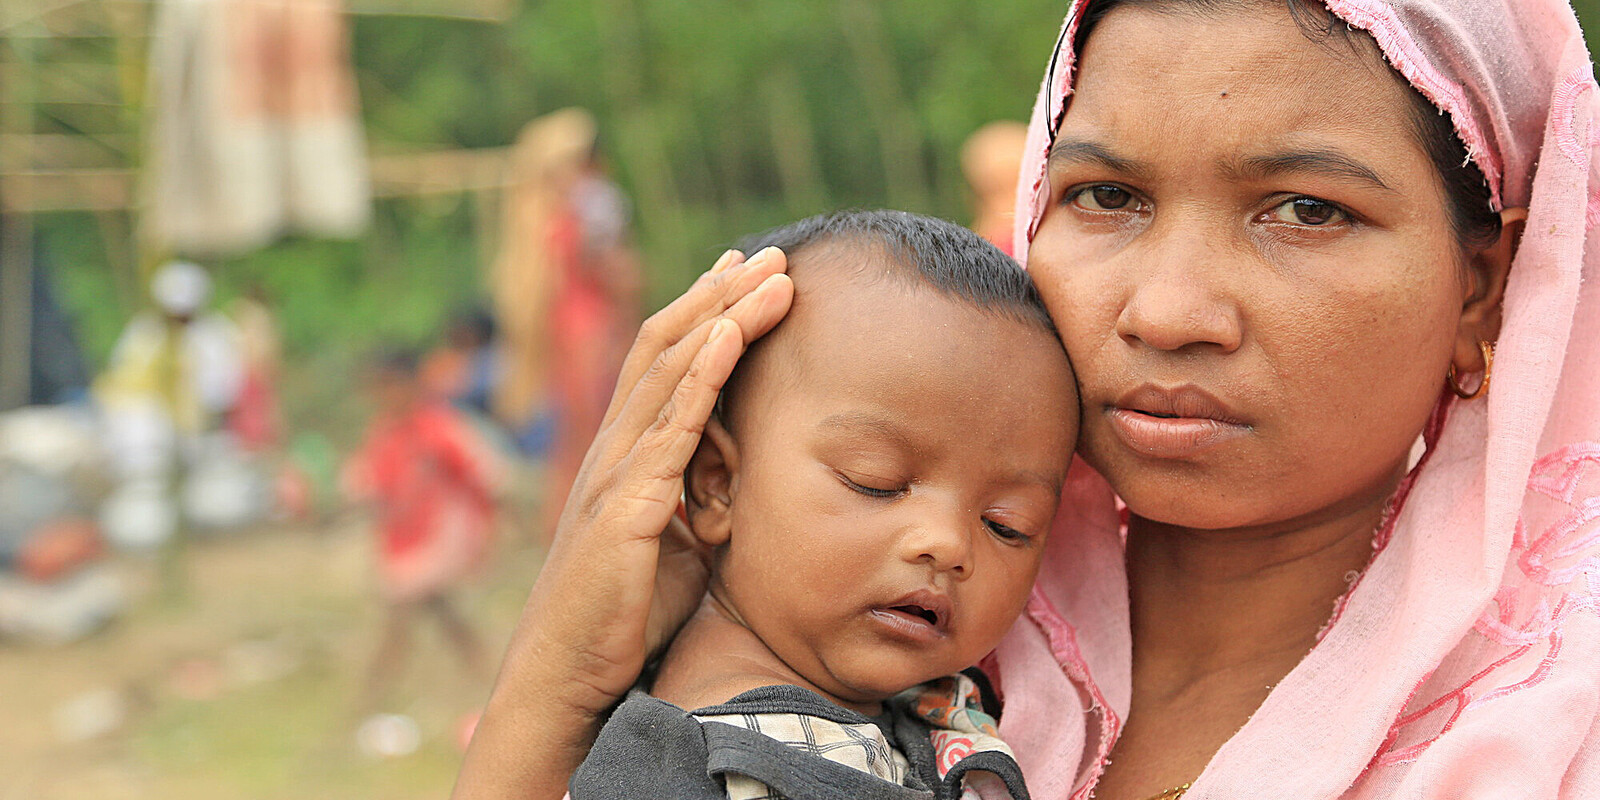 Flucht vor dem Klima und der Verfolgung: Eine Rohingya mit ihrem Baby auf dem Arm